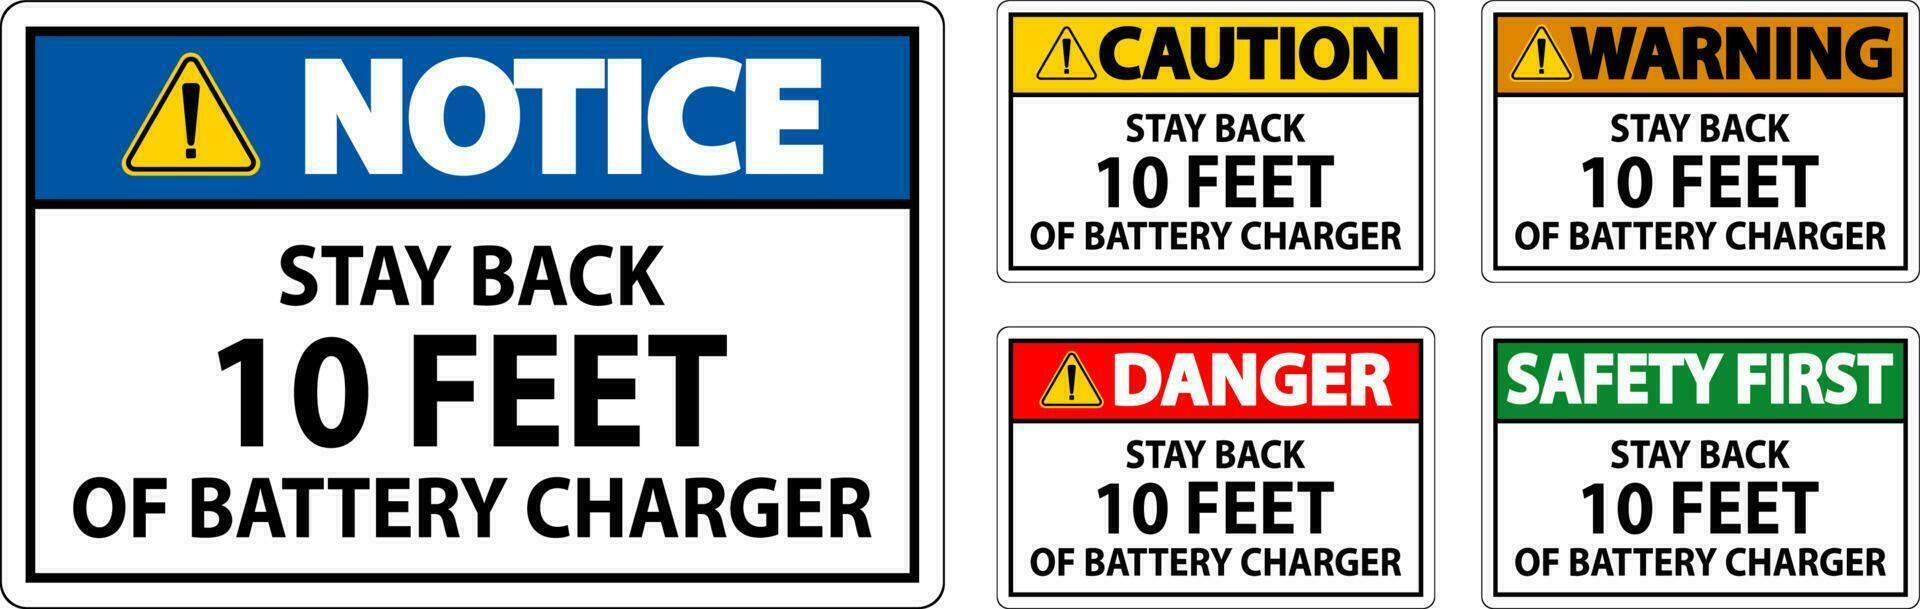 attenzione cartello restare indietro 10 piedi di batteria caricabatterie vettore